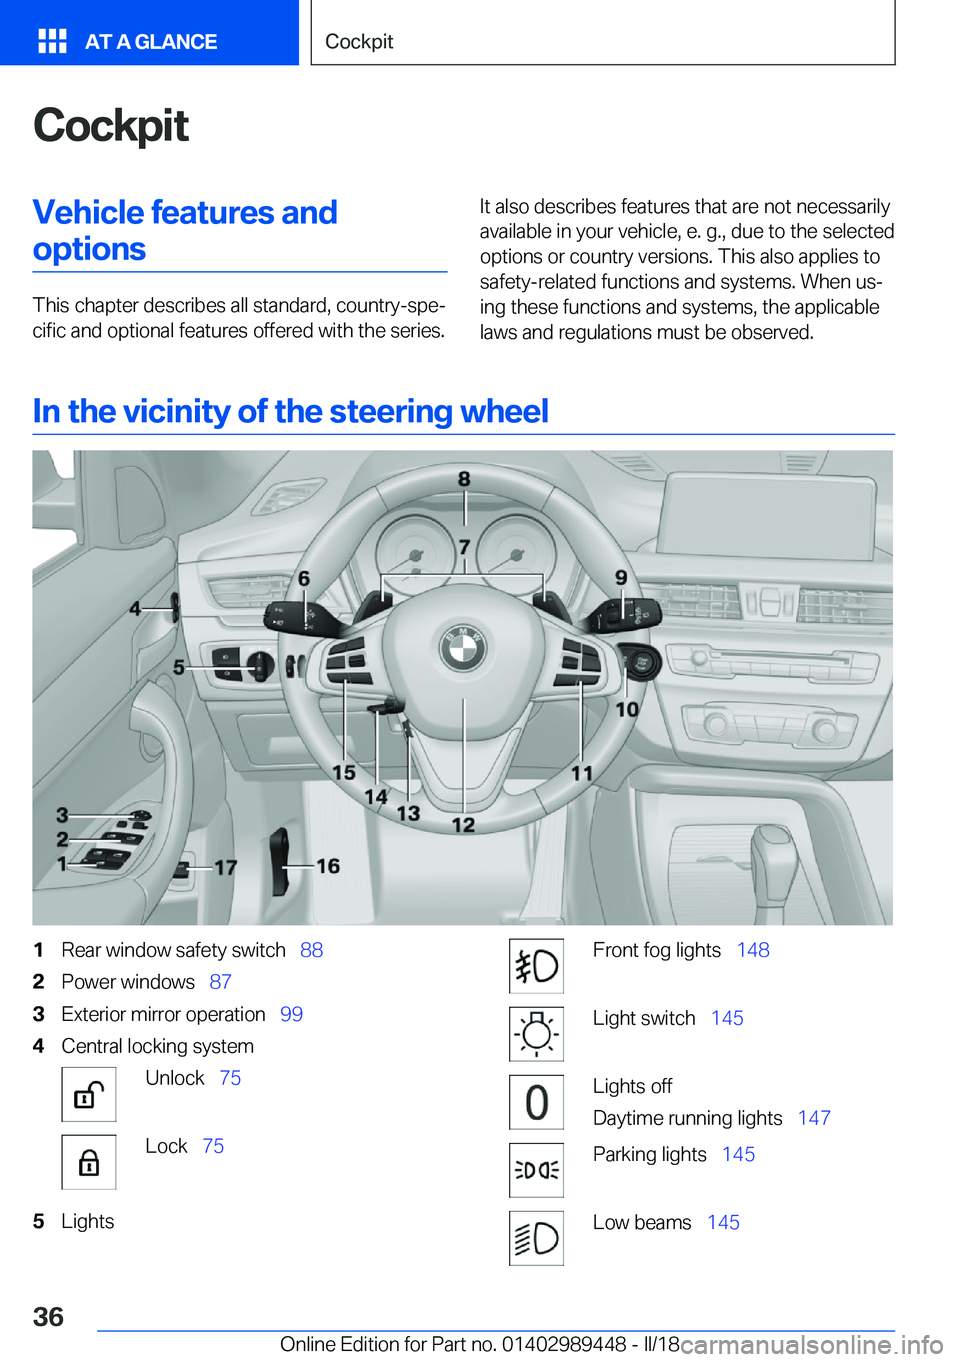 BMW X2 2018 Owners Guide �C�o�c�k�p�i�t�V�e�h�i�c�l�e��f�e�a�t�u�r�e�s��a�n�d�o�p�t�i�o�n�s
�T�h�i�s� �c�h�a�p�t�e�r� �d�e�s�c�r�i�b�e�s� �a�l�l� �s�t�a�n�d�a�r�d�,� �c�o�u�n�t�r�y�-�s�p�ej�c�i�f�i�c� �a�n�d� �o�p�t�i�o�n�